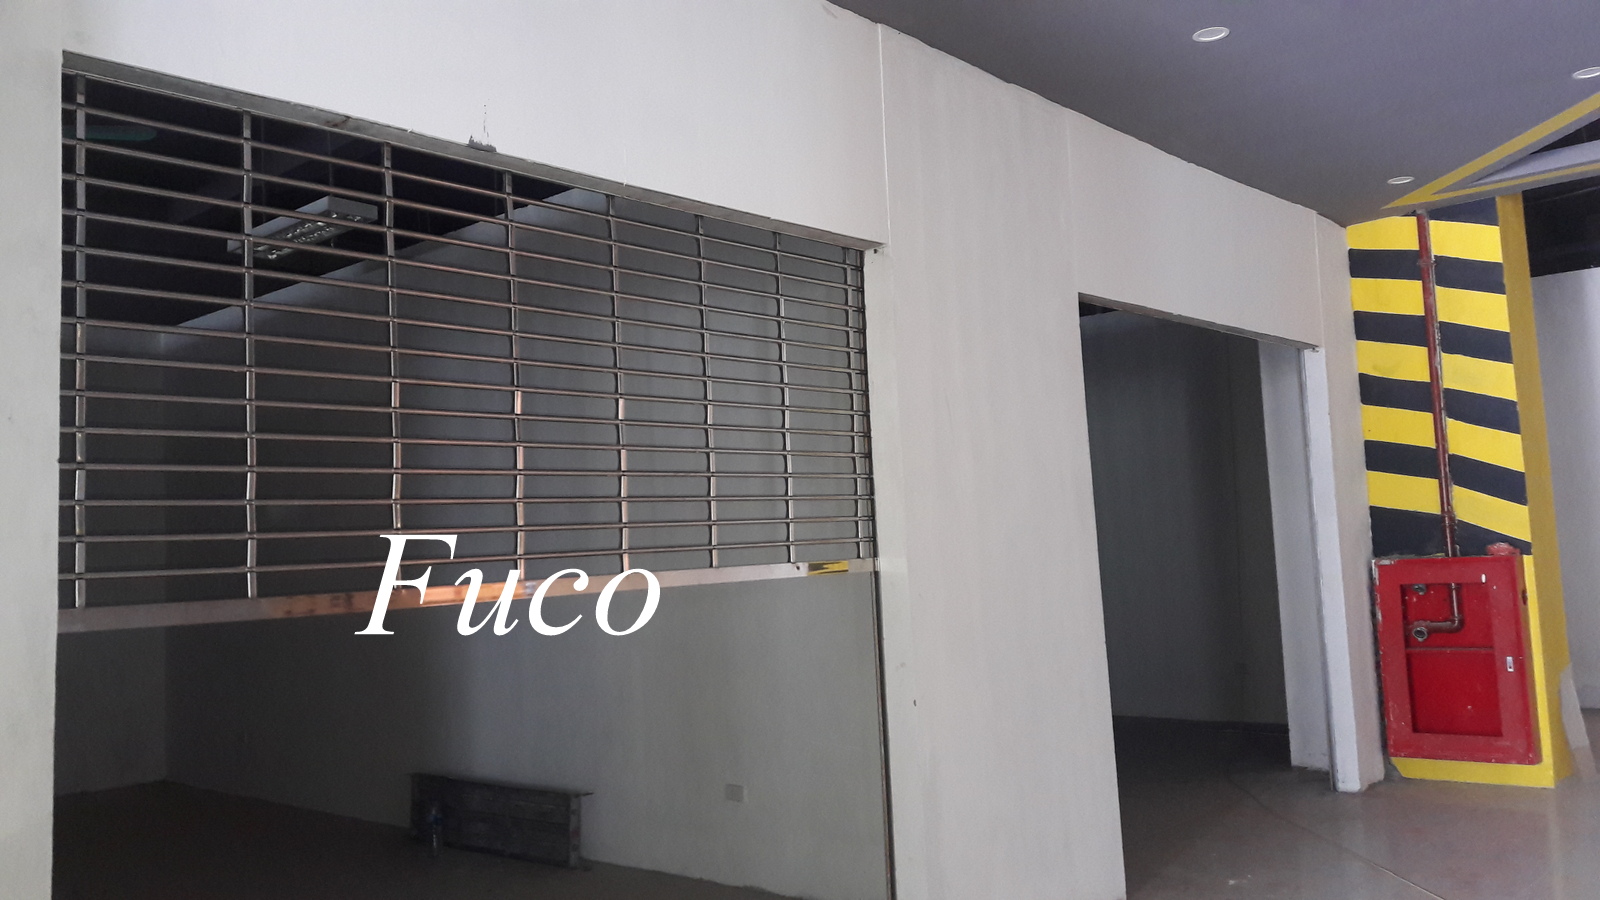 Cửa cuốn song ngang inox và cửa cuốn song ngang sơn tĩnh điện được sản xuất bởi Fuco. Cửa cuốn song ngang Fuco được khách hàng sử dụng nhiều nhất .